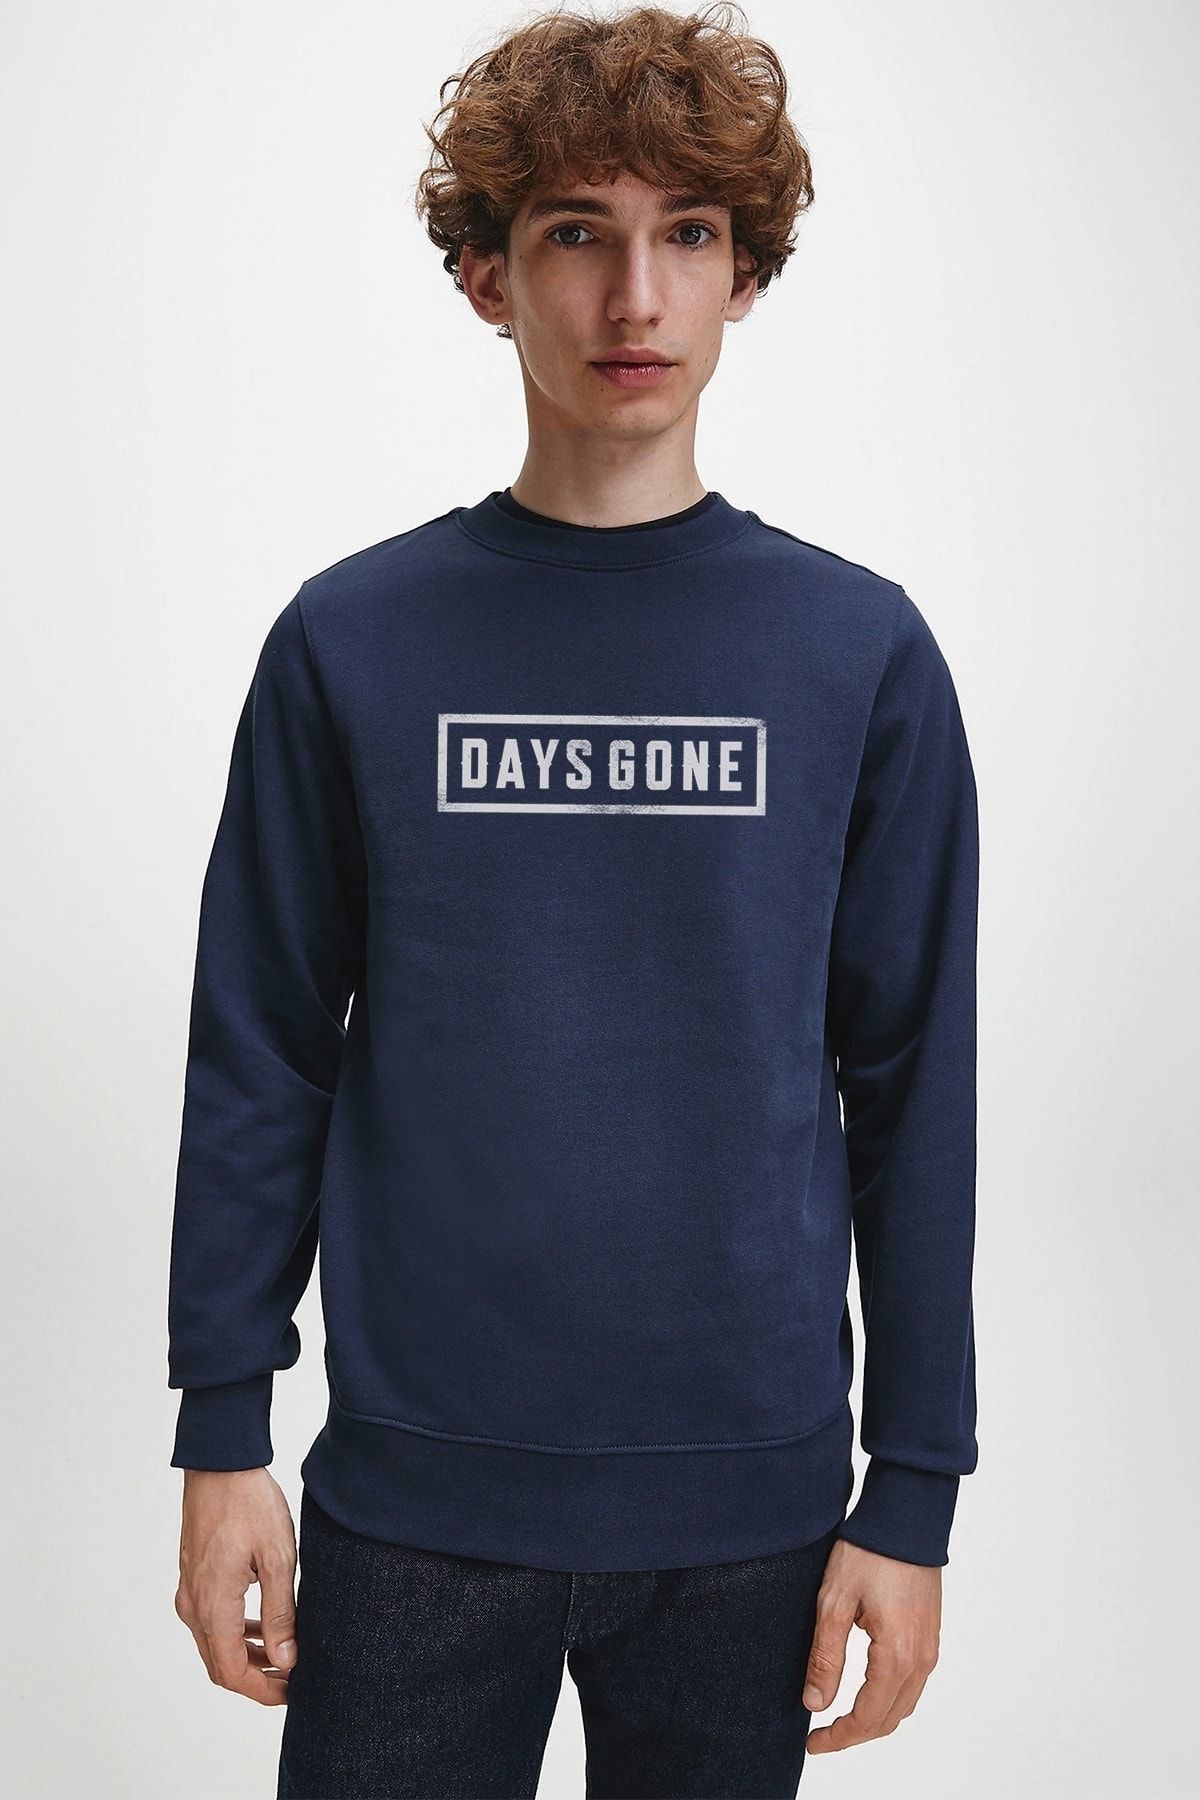 QIVI Days Gone Logo Baskılı Indigo Mavi Lacivert Erkek Örme Sweatshirt Uzun Kol